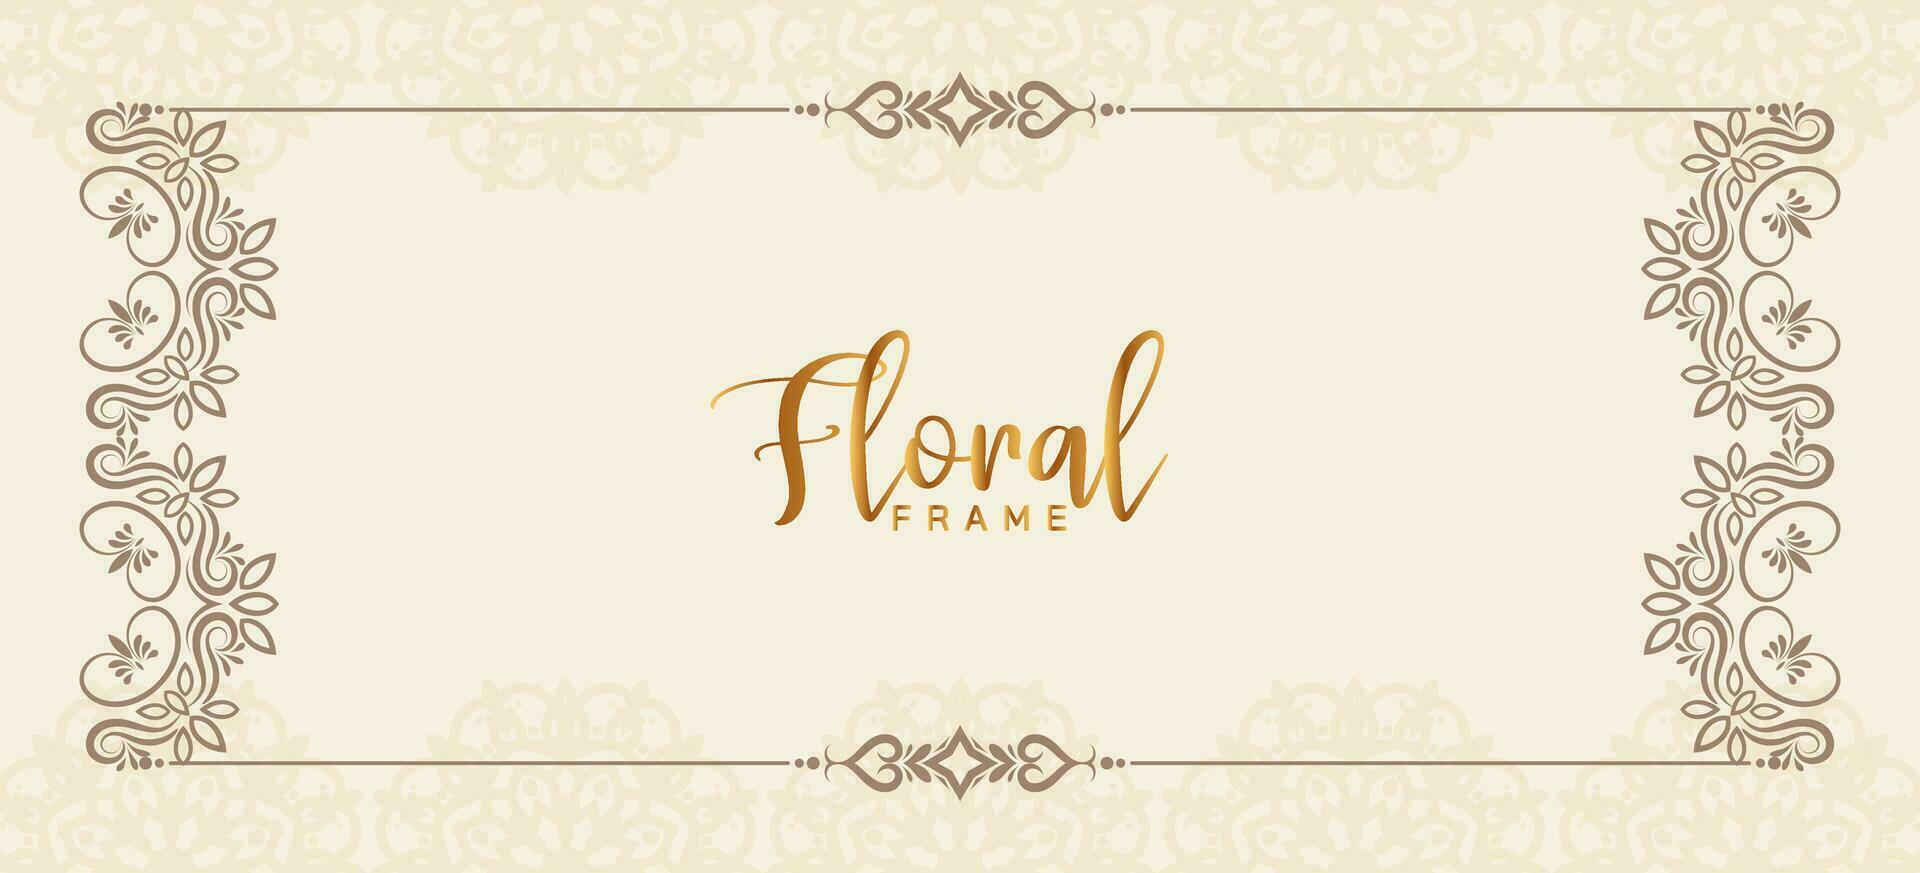 elegante decorativo floral marco elegante decoración bandera diseño vector